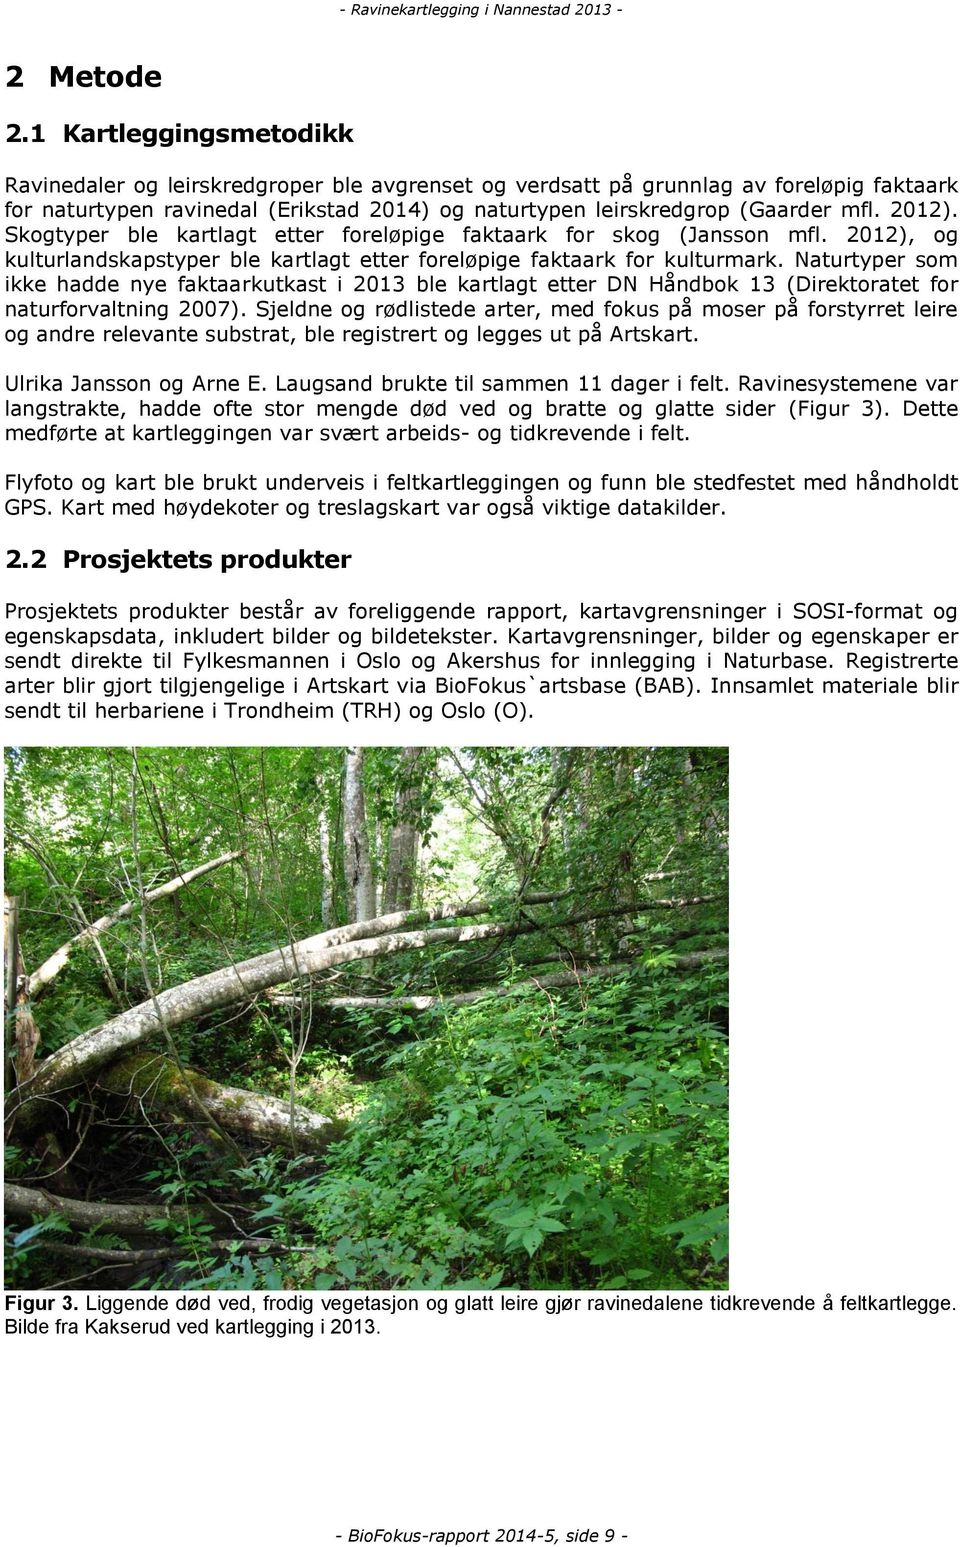 2012). Skogtyper ble kartlagt etter foreløpige faktaark for skog (Jansson mfl. 2012), og kulturlandskapstyper ble kartlagt etter foreløpige faktaark for kulturmark.